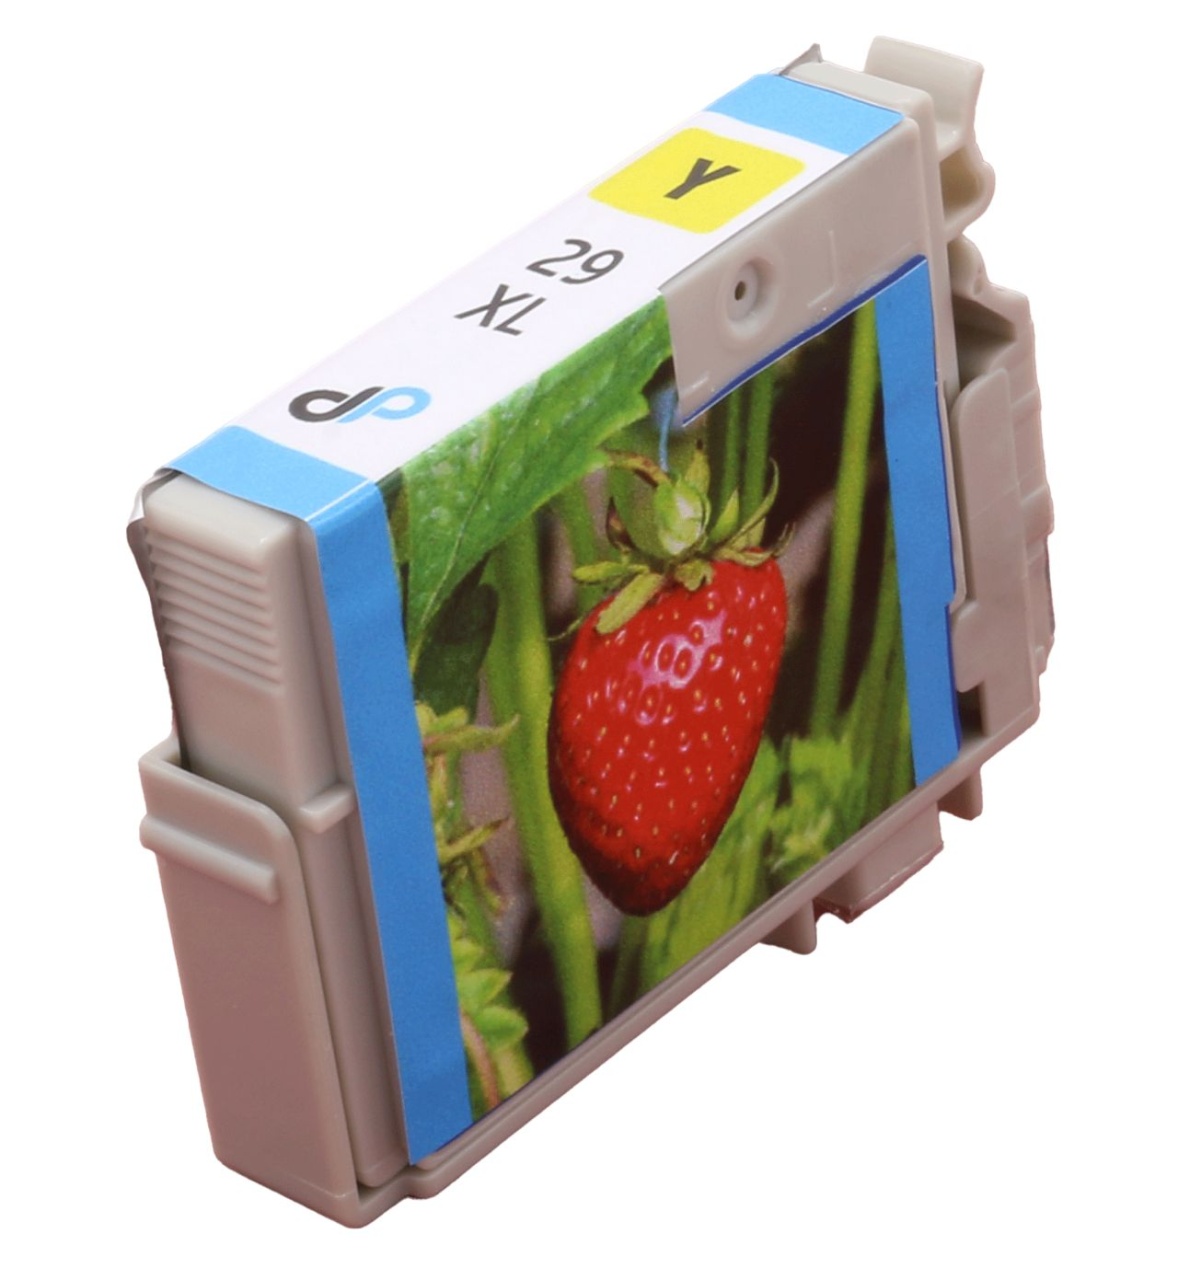 Kompatibel zu Epson 29XL Der Tinte / ml 6,4 DruckerProfi Erdbeere gelb 